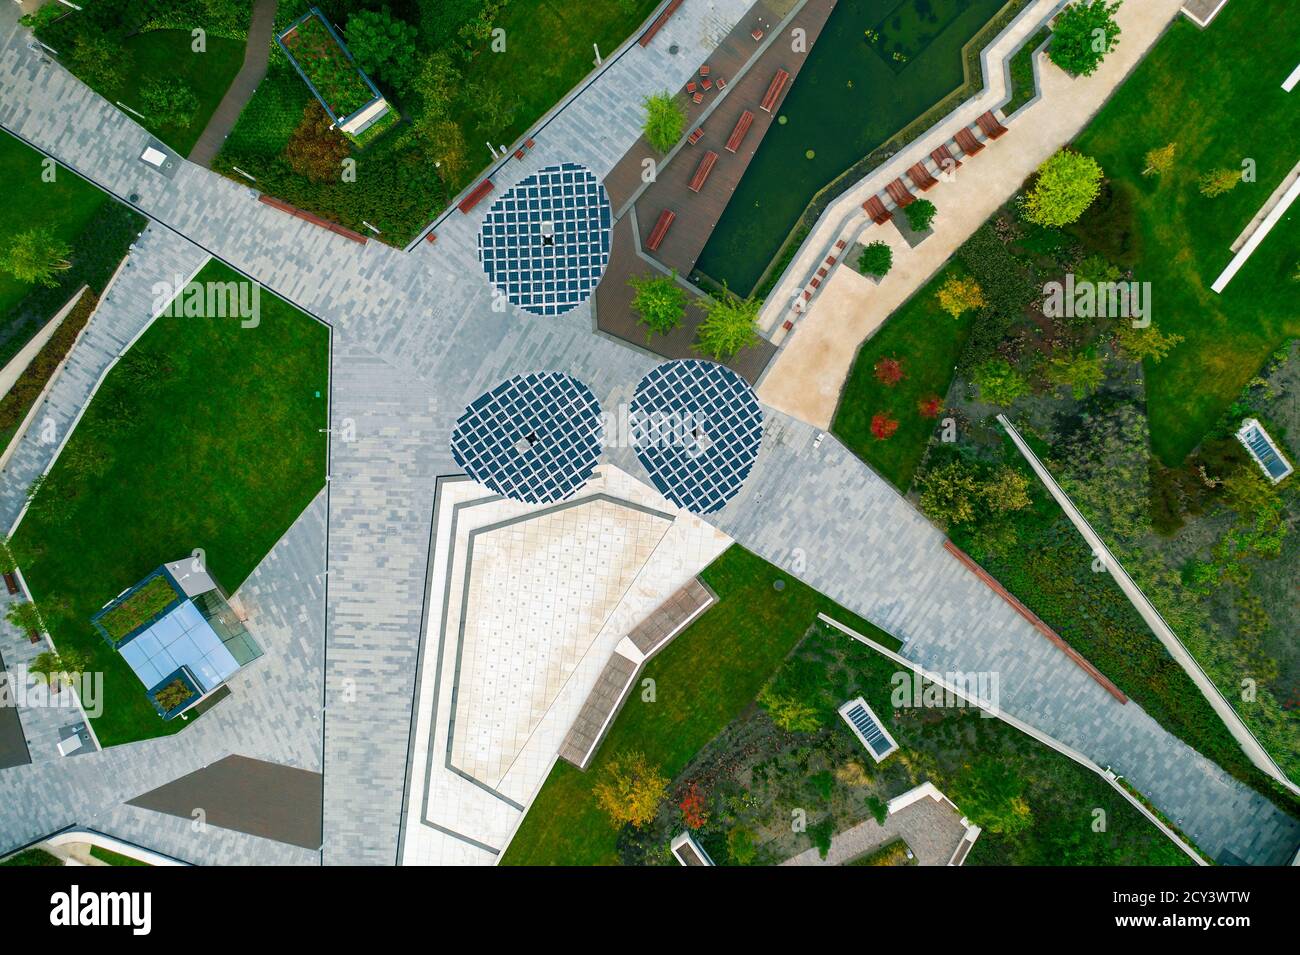 Vue aérienne sur le nouveau parc millénaire de Budapest Hongrie. Nouveau parc extérieur à temps libre incroyable à Buda, à côté d'un centre commercial près de Kalman Sze Banque D'Images